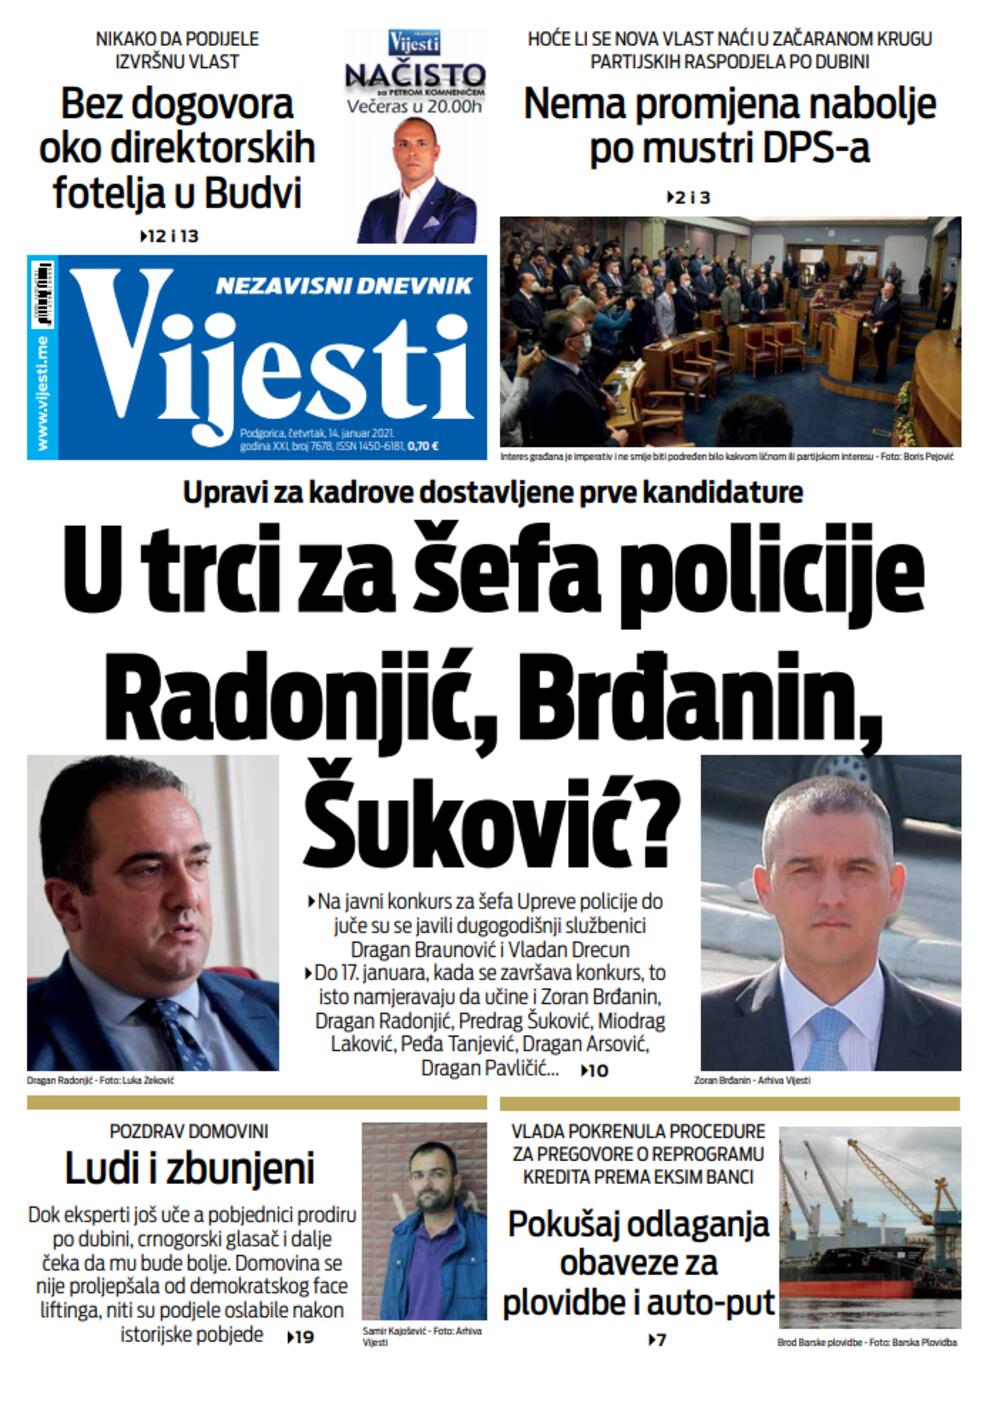 Naslovna strana "Vijesti" za četvrtak 14. januar 2021. godine, Foto: Vijesti